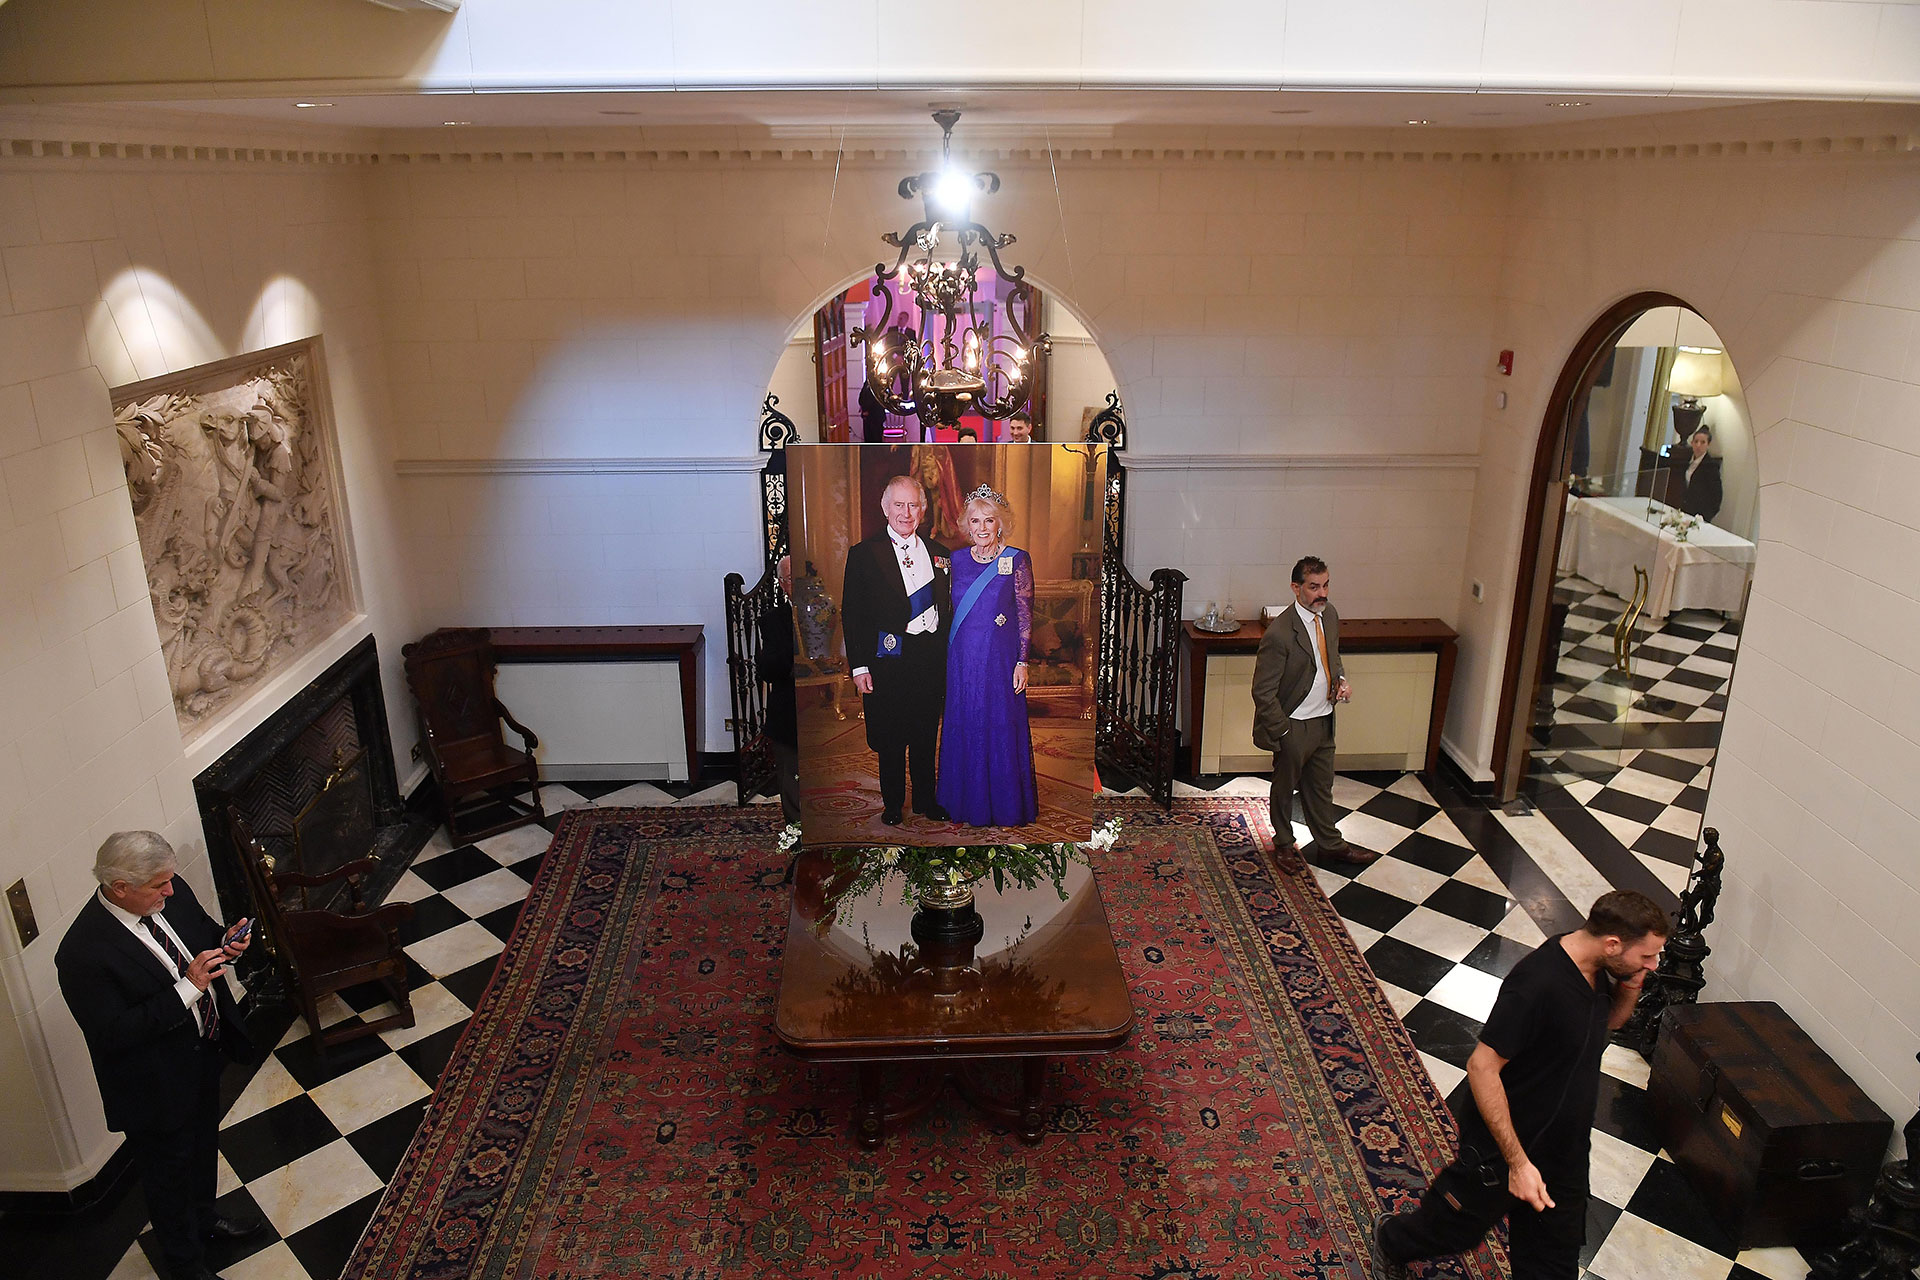 Una gigantografía de los flamantes reyes recibió a los invitados en el hall principal de la Residencia británica 